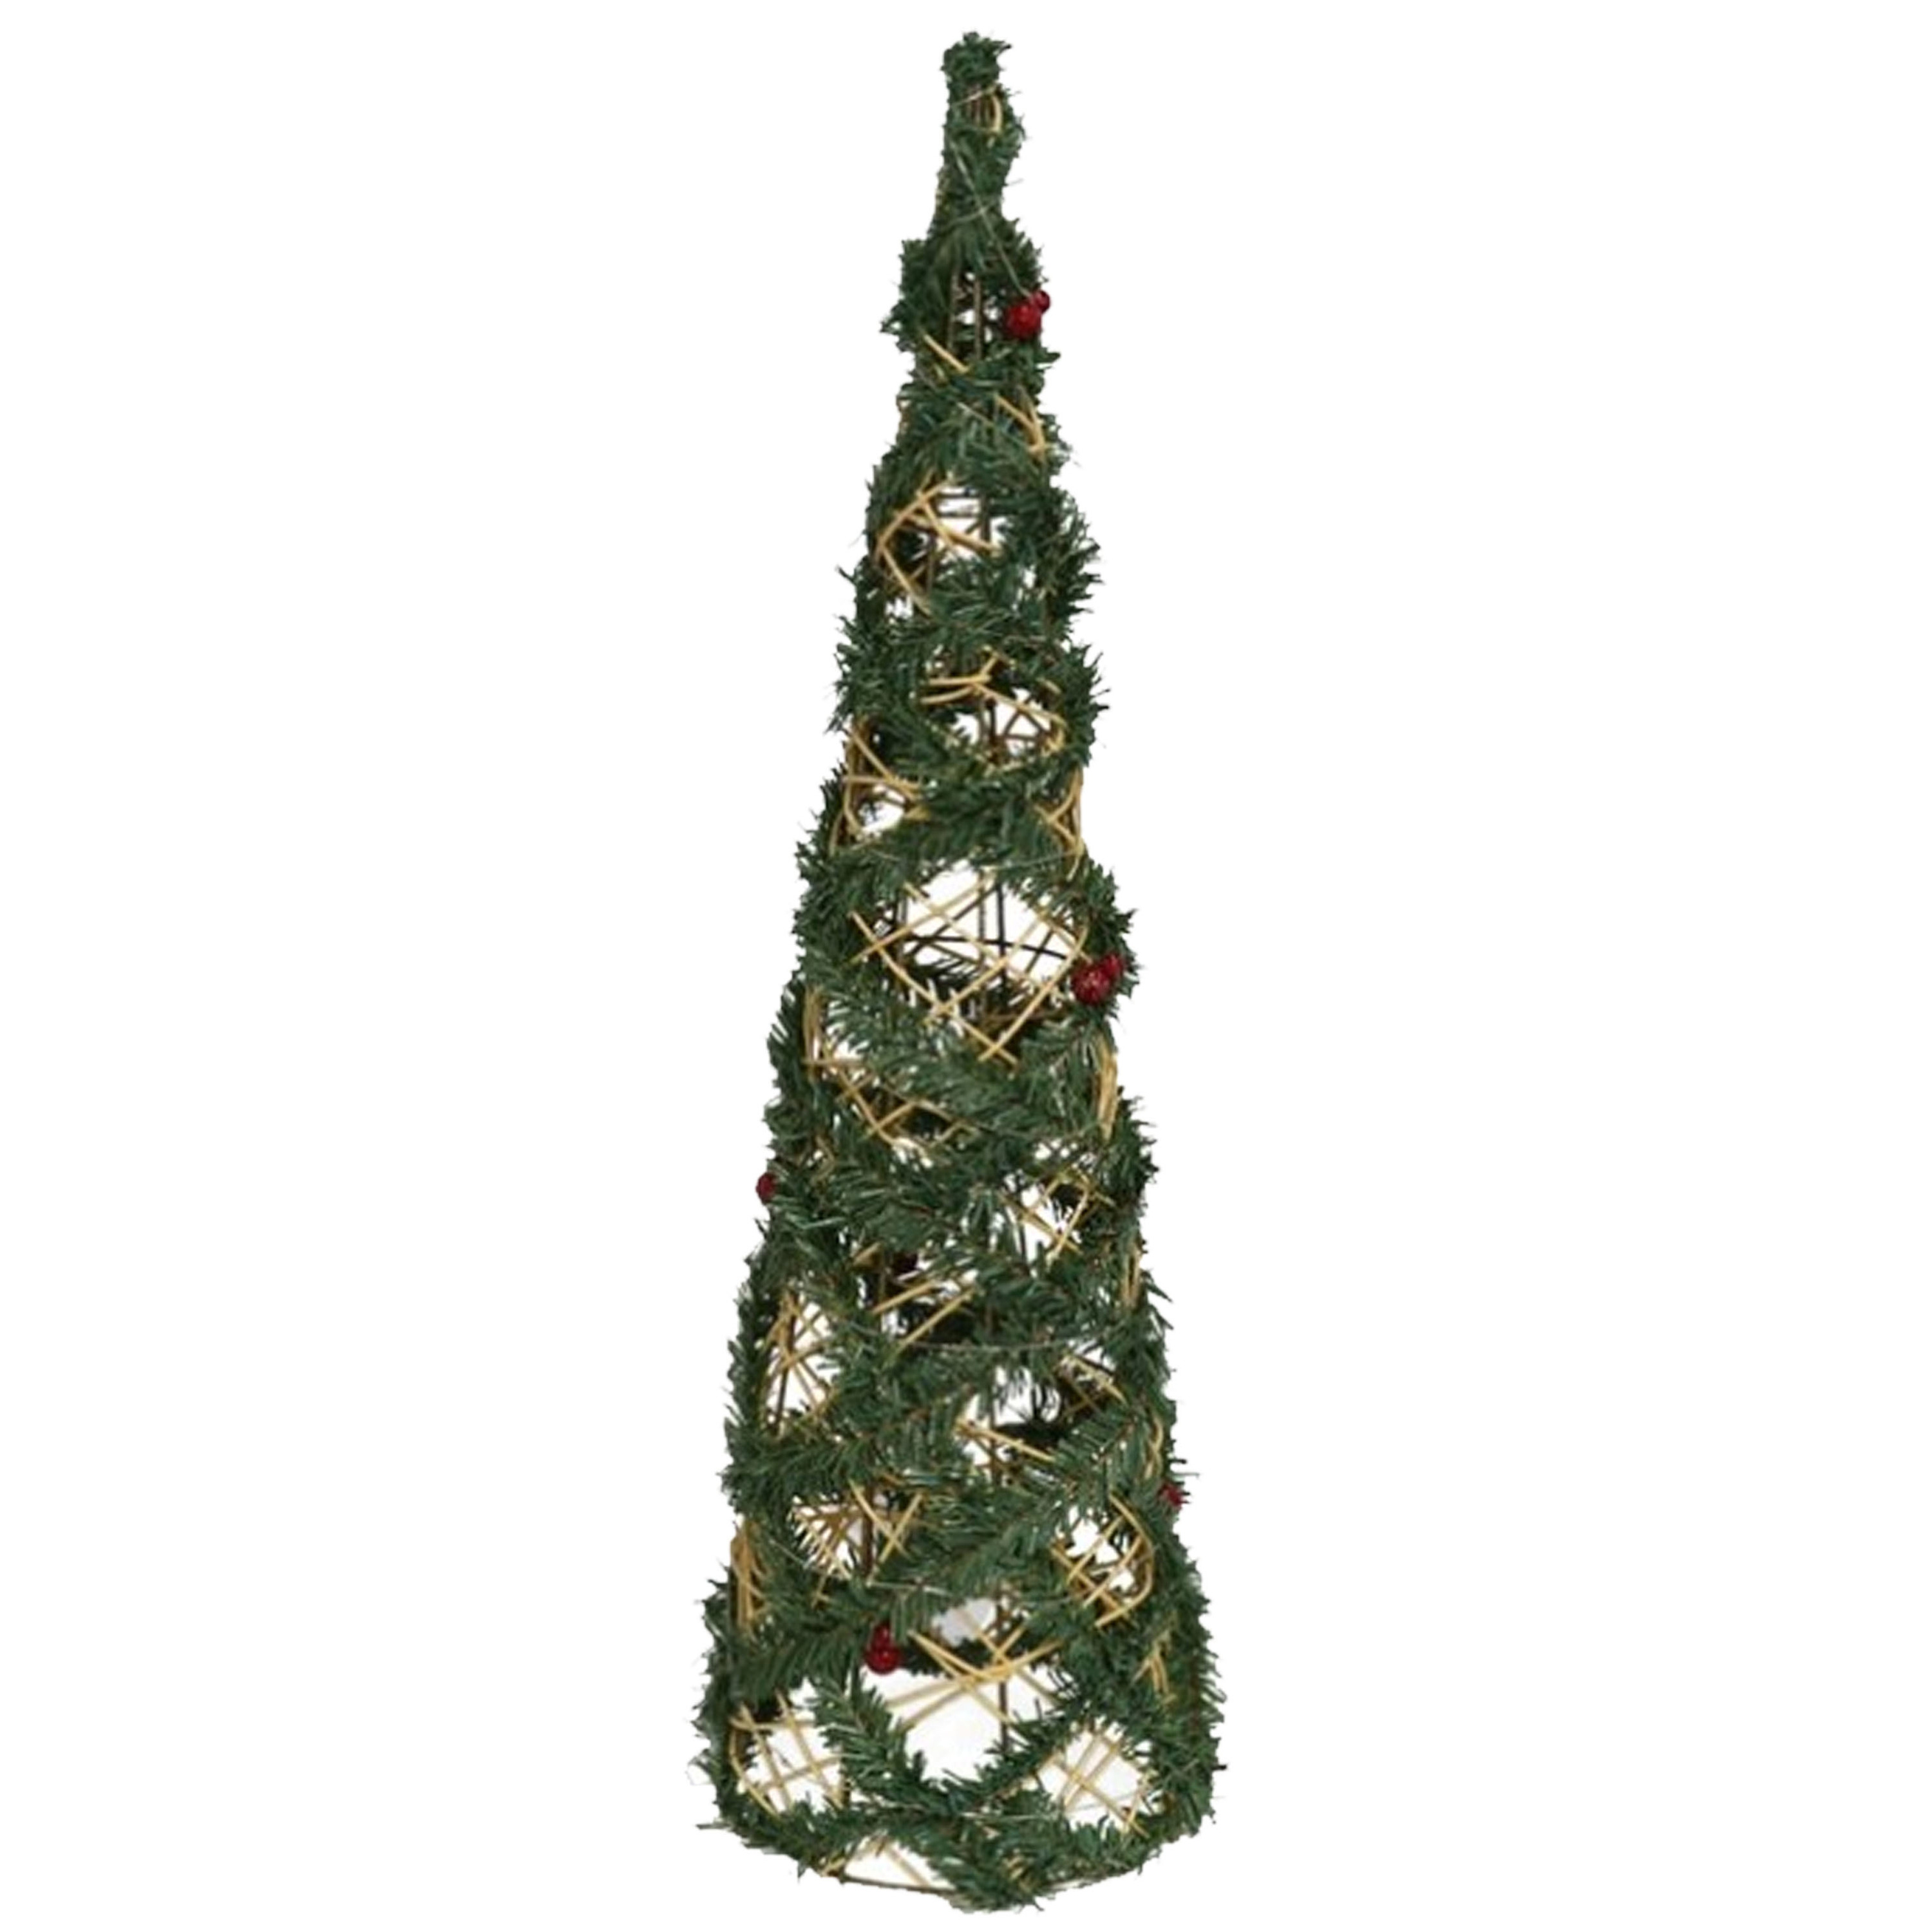 Kerstverlichting figuren Led kegel kerstboom draad-groen 60 cm 30 leds